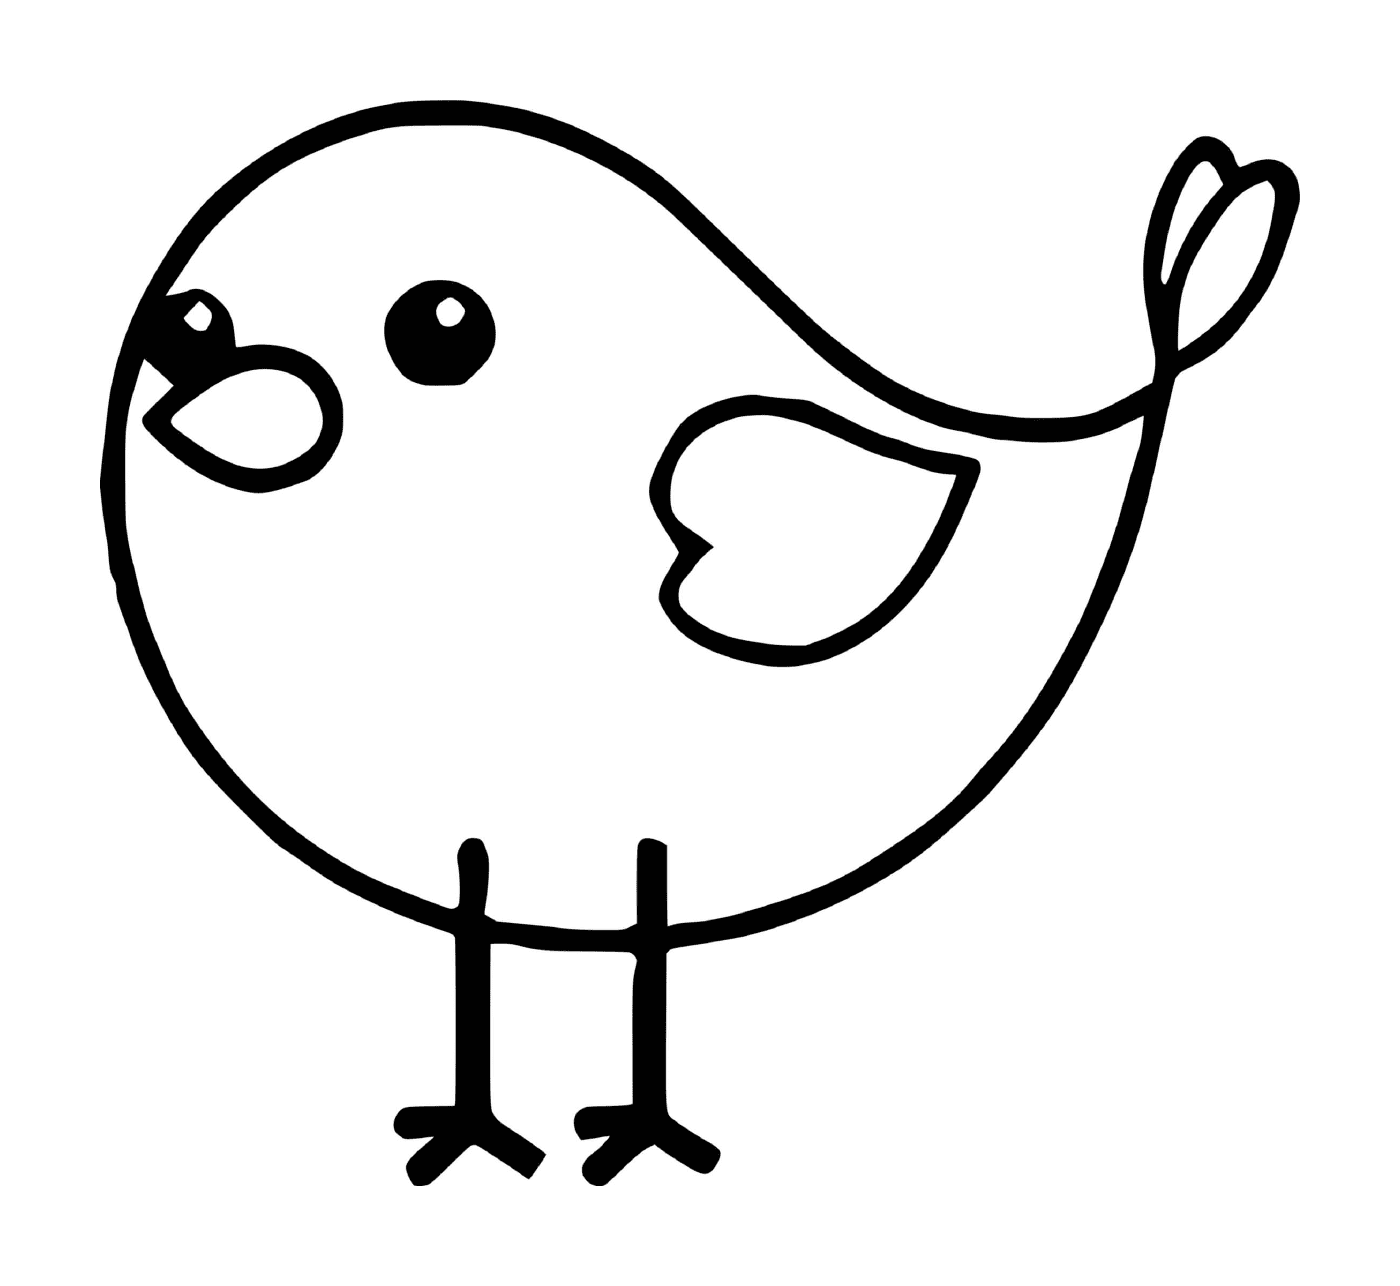  easy bird for children 